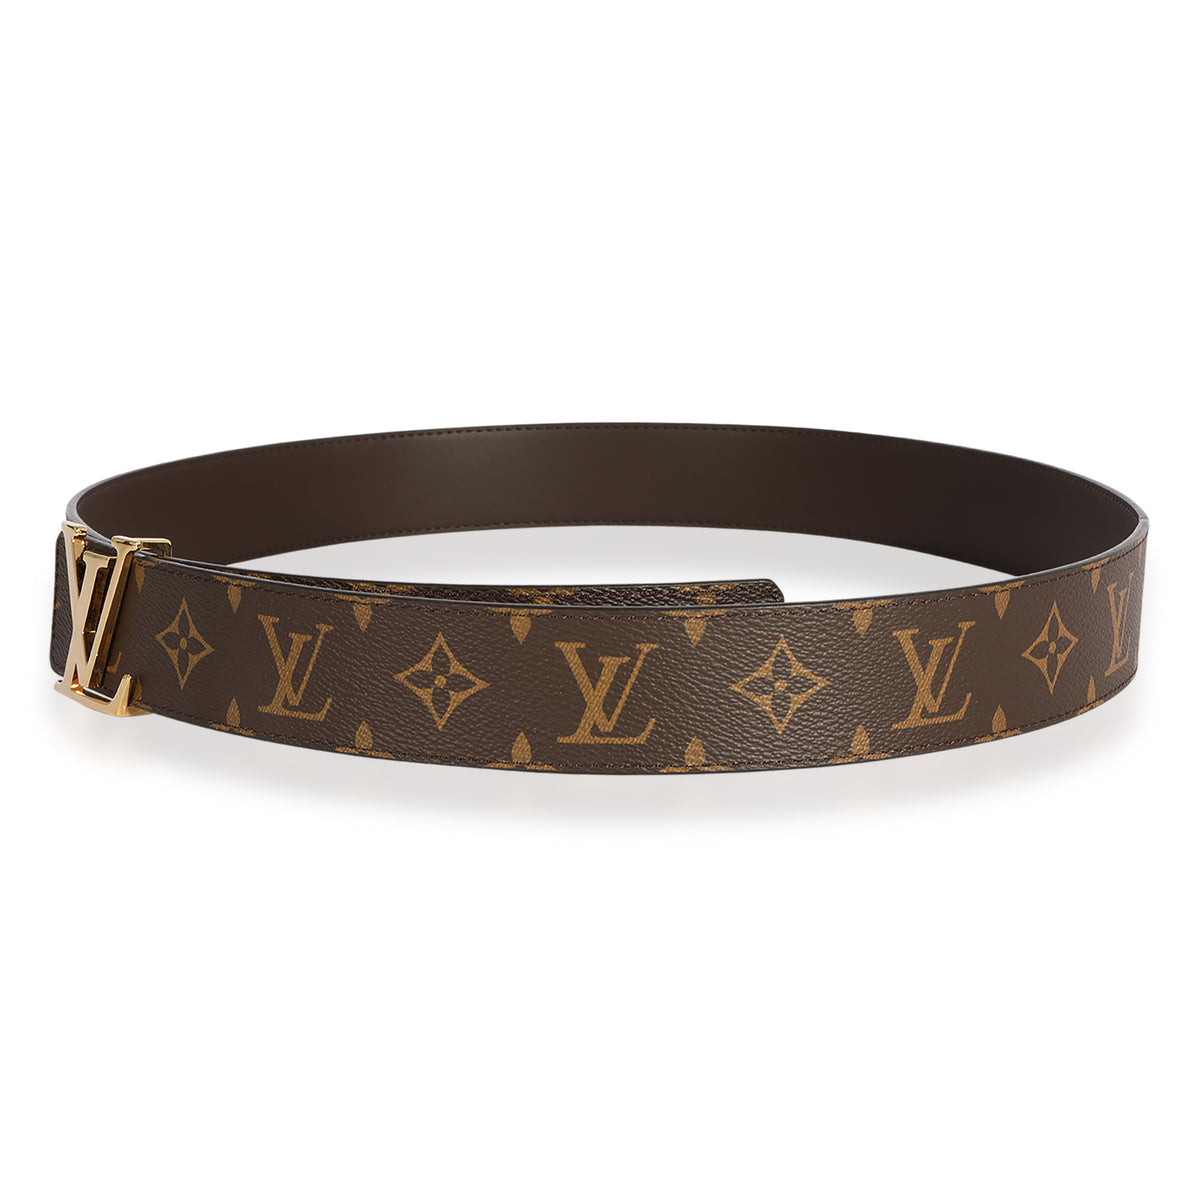 Louis Vuitton Monogram Canvas LV Initiales 40mm Reversible Belt, myGemma